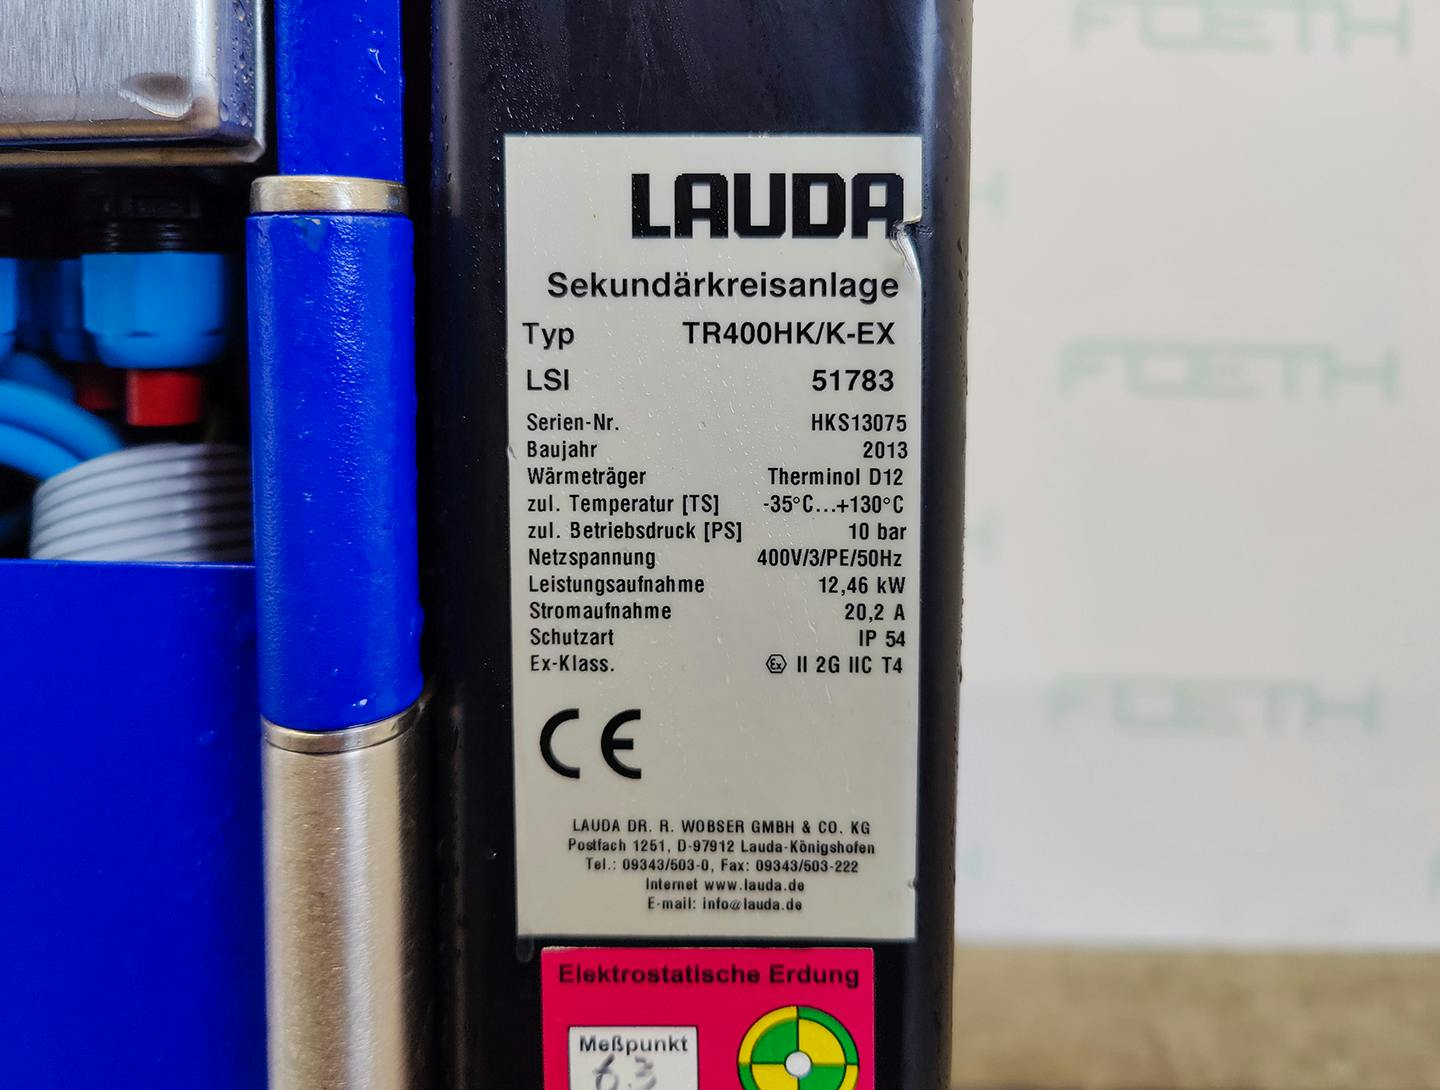 Lauda TR400 HK/K-EX "secondary circuit system" - Urzadzenie termostatyczne - image 6